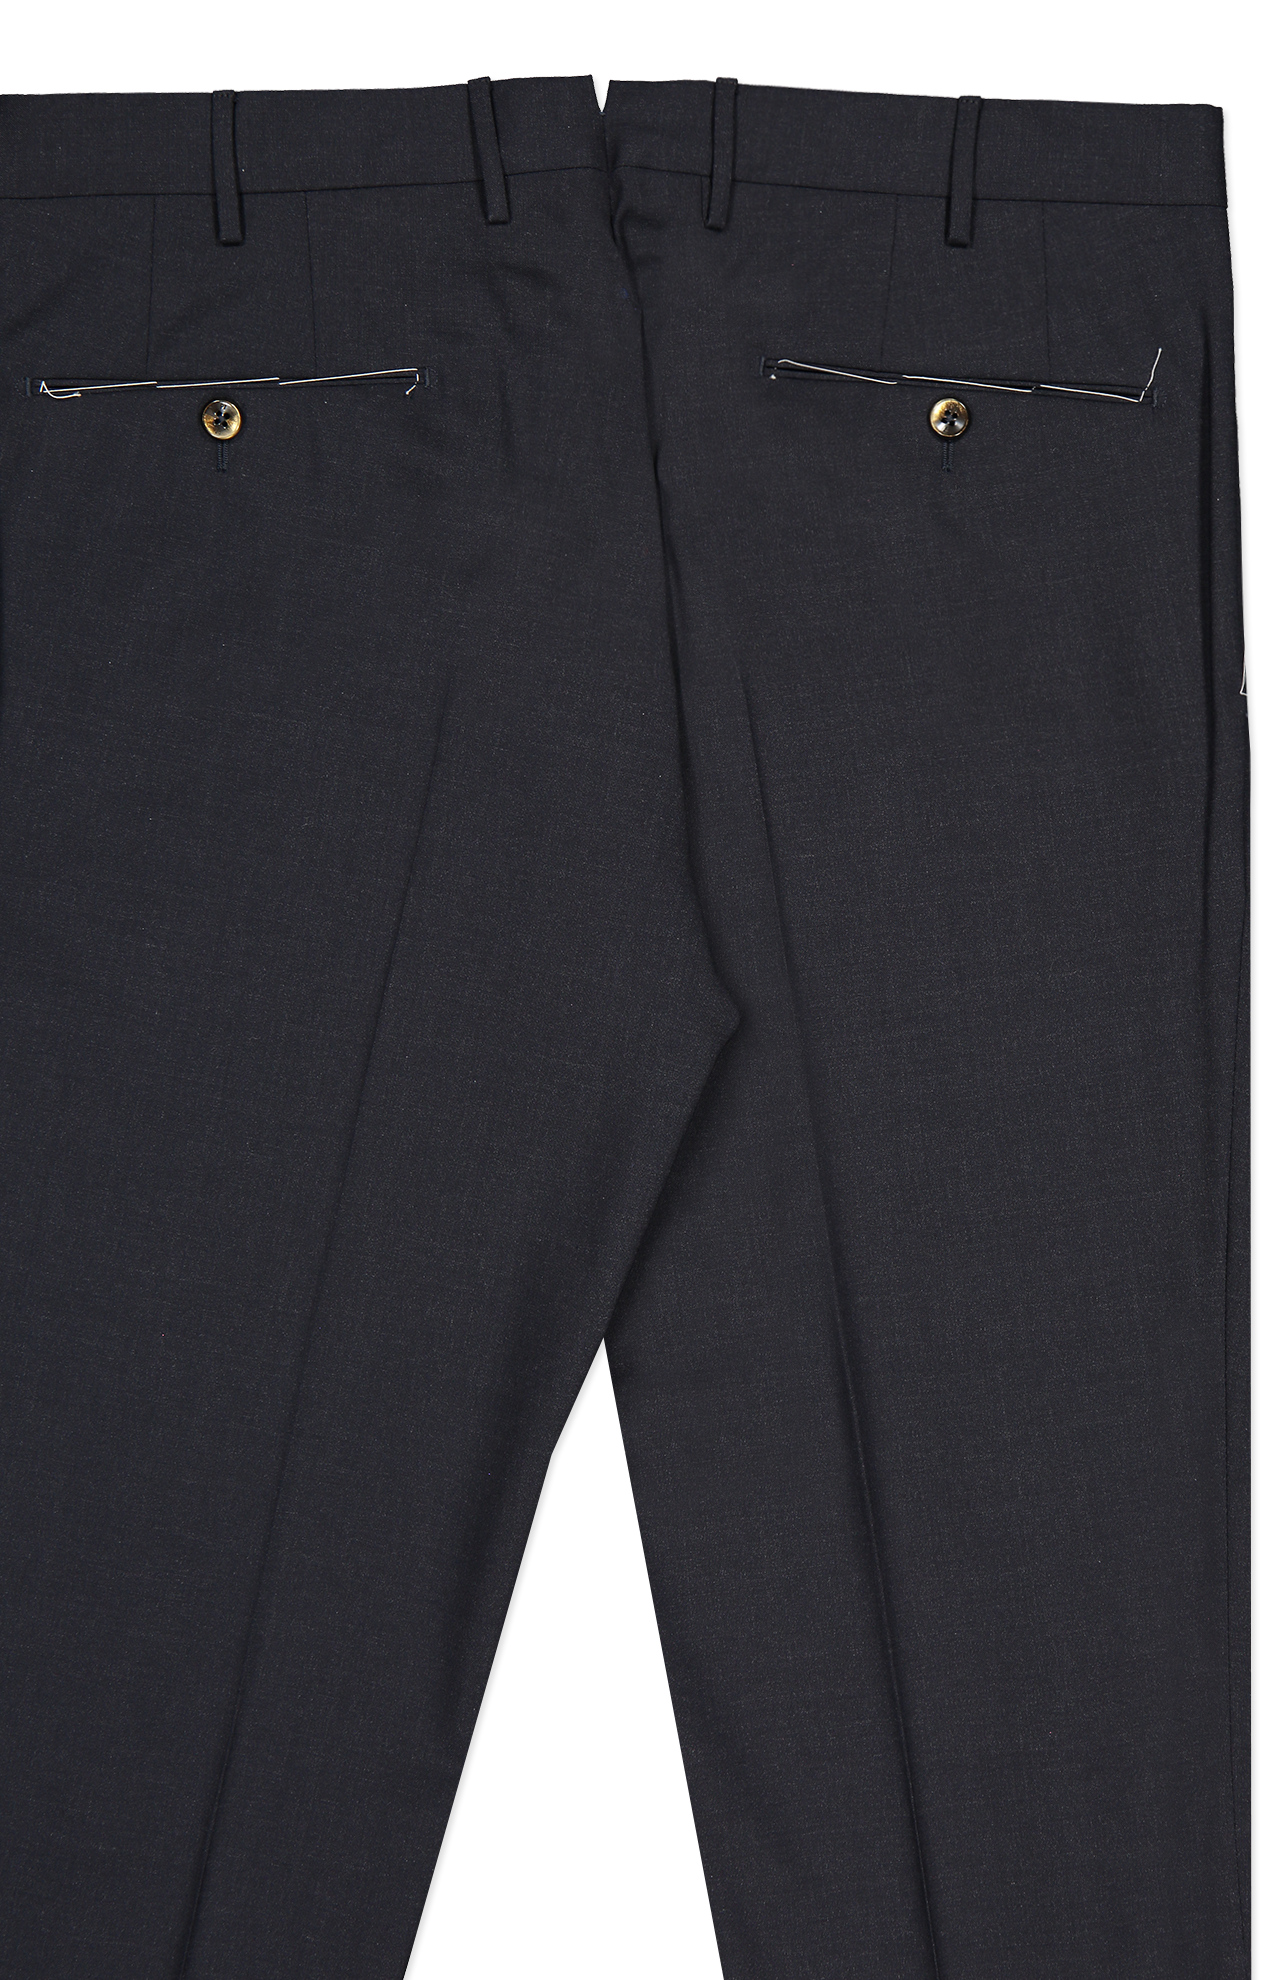 PT Torino Wool Plain Weave Trouser in Navy Melange Back Detail Image (7062203891827)